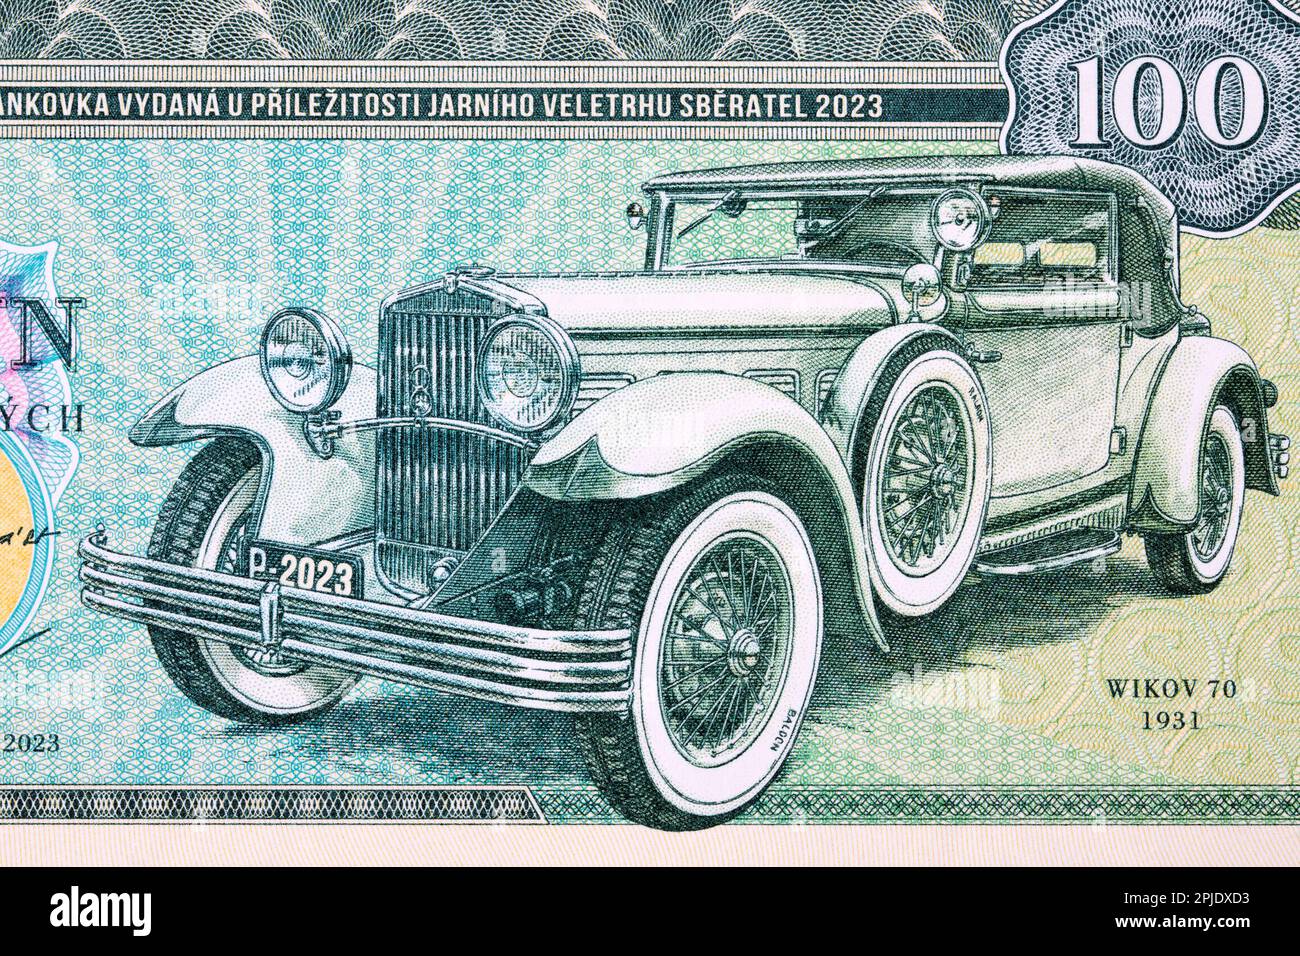 Old car from Czechoslovak money - koruna Stock Photo